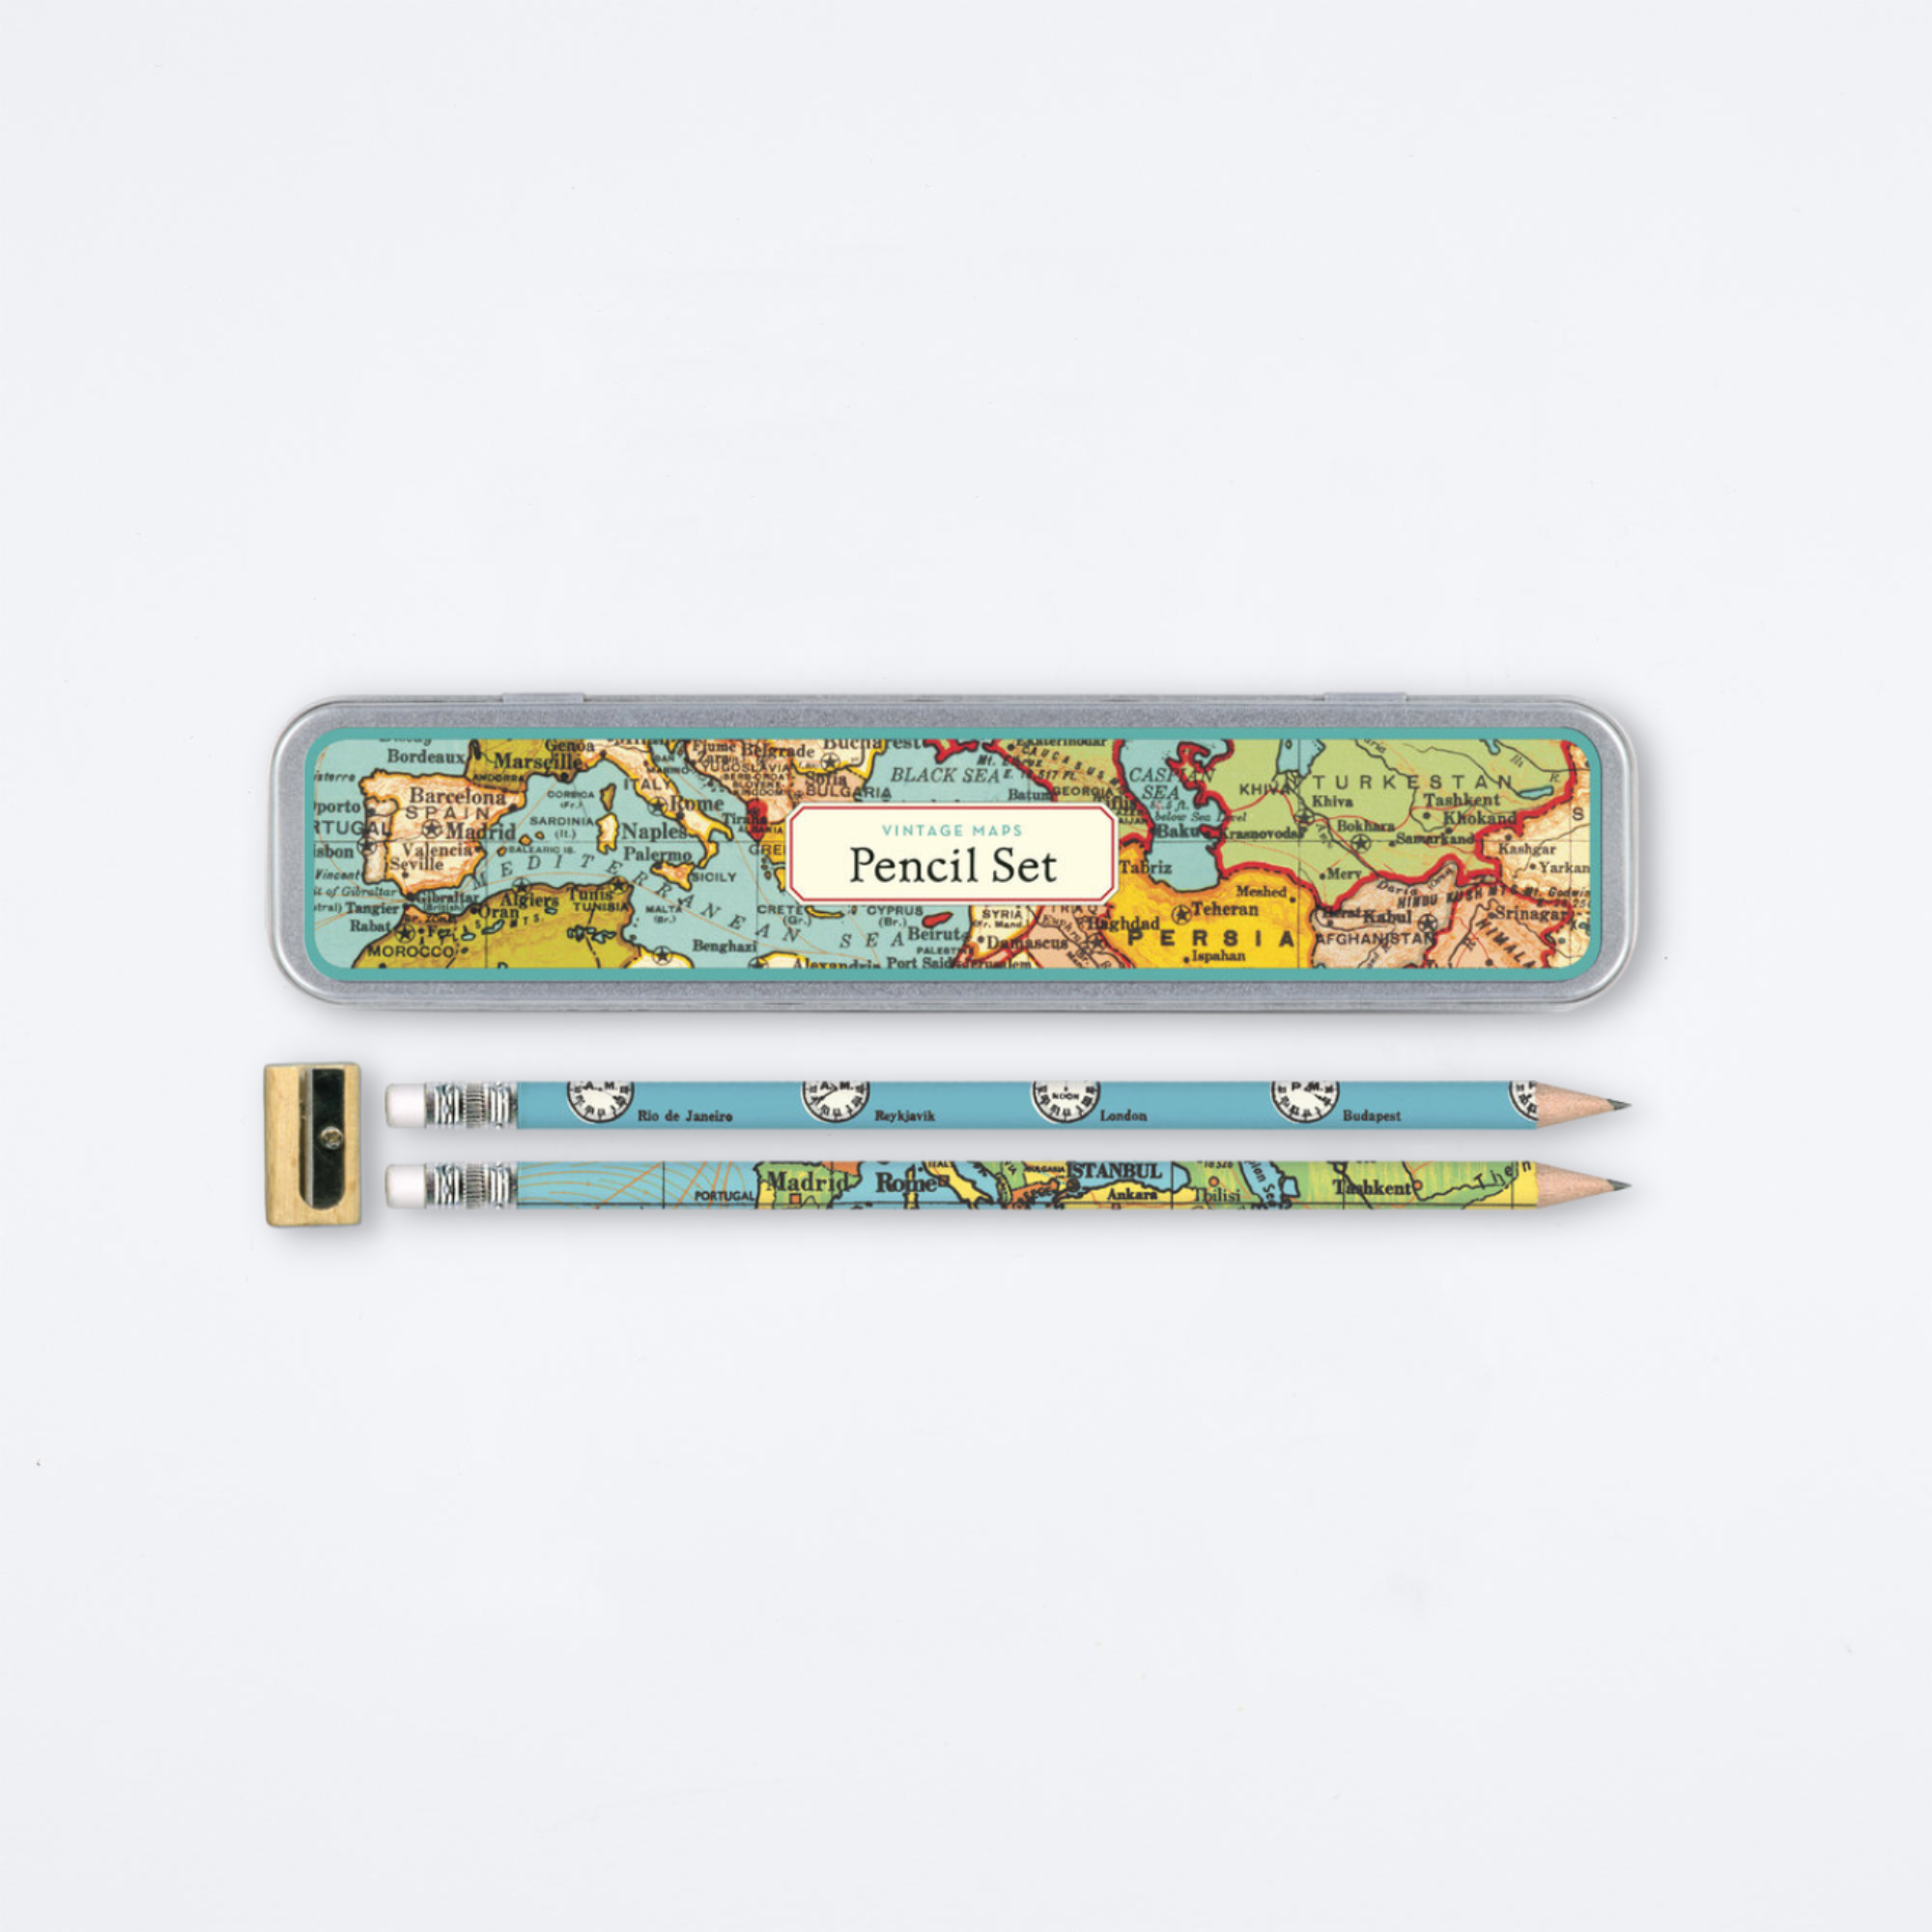 Vintage Maps Pencil Set